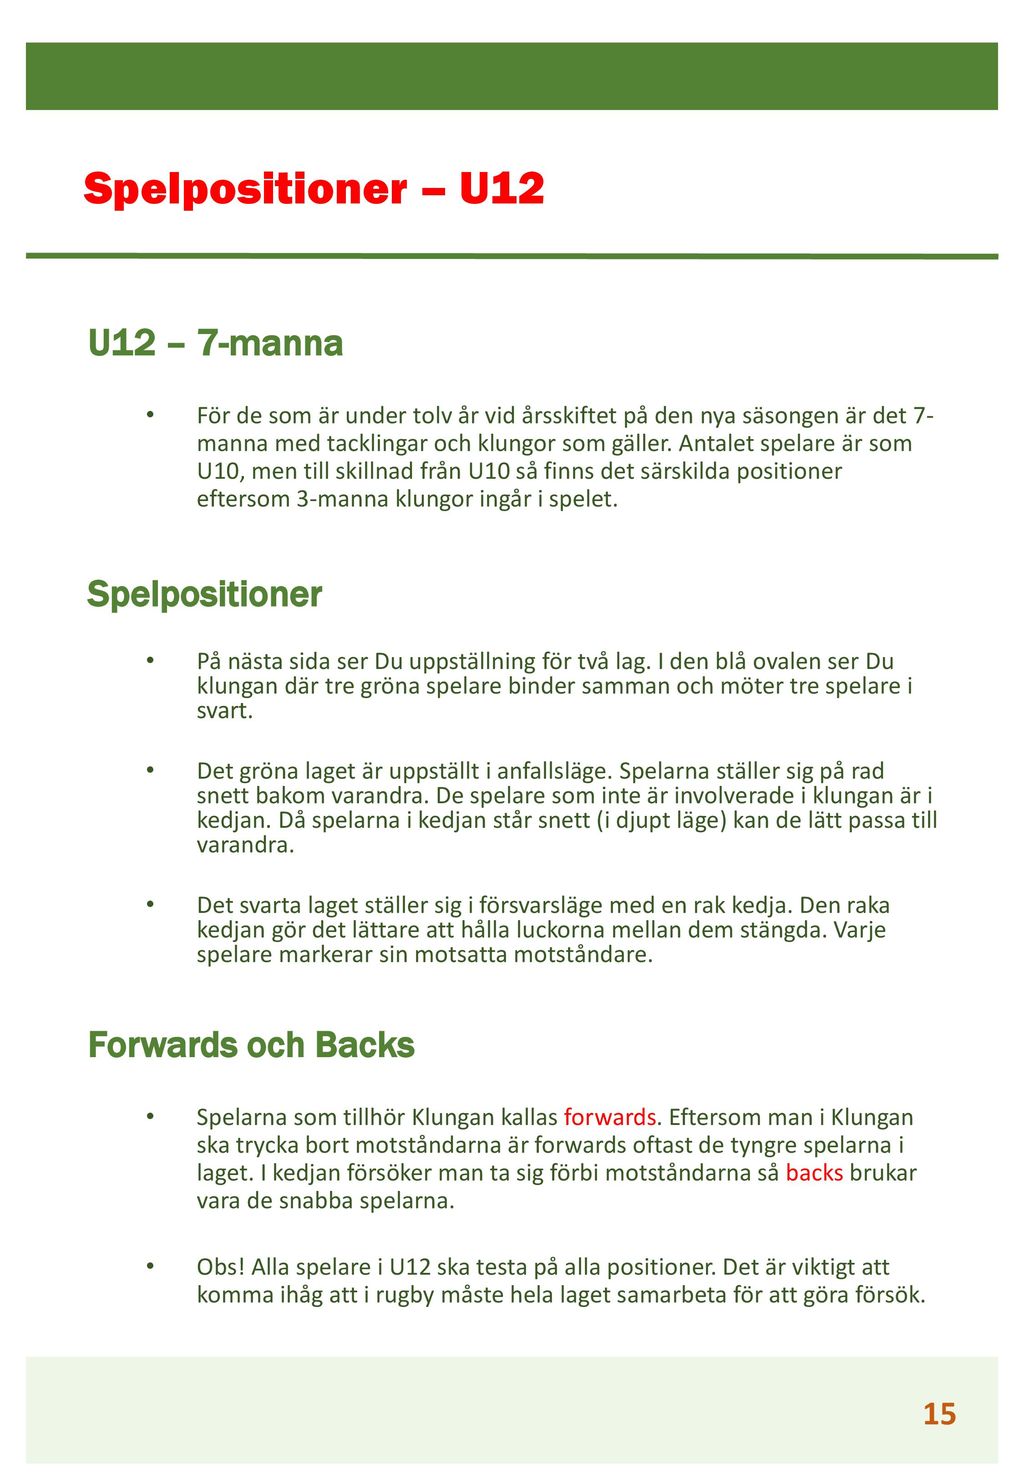 Spelpositioner – U12 U12 – 7-manna Spelpositioner Forwards och Backs